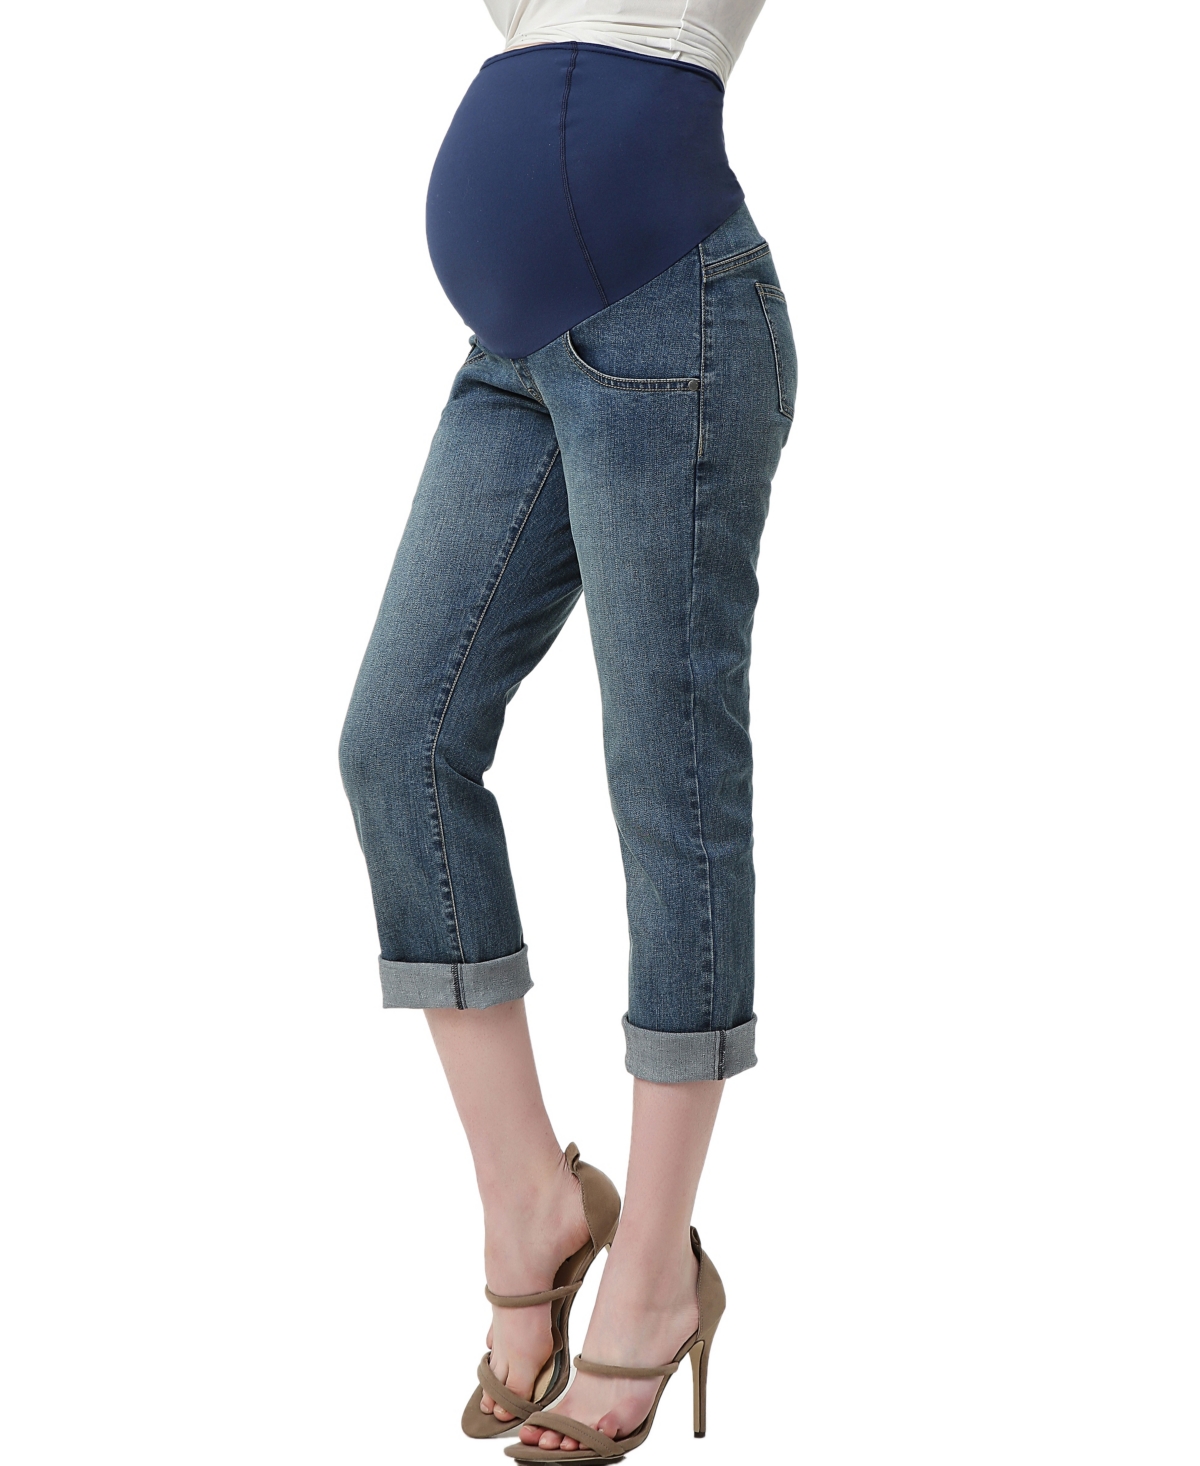 kimi + kai Maternity Jodie Stretch Boyfriend Denim Jeans - Medium indigo